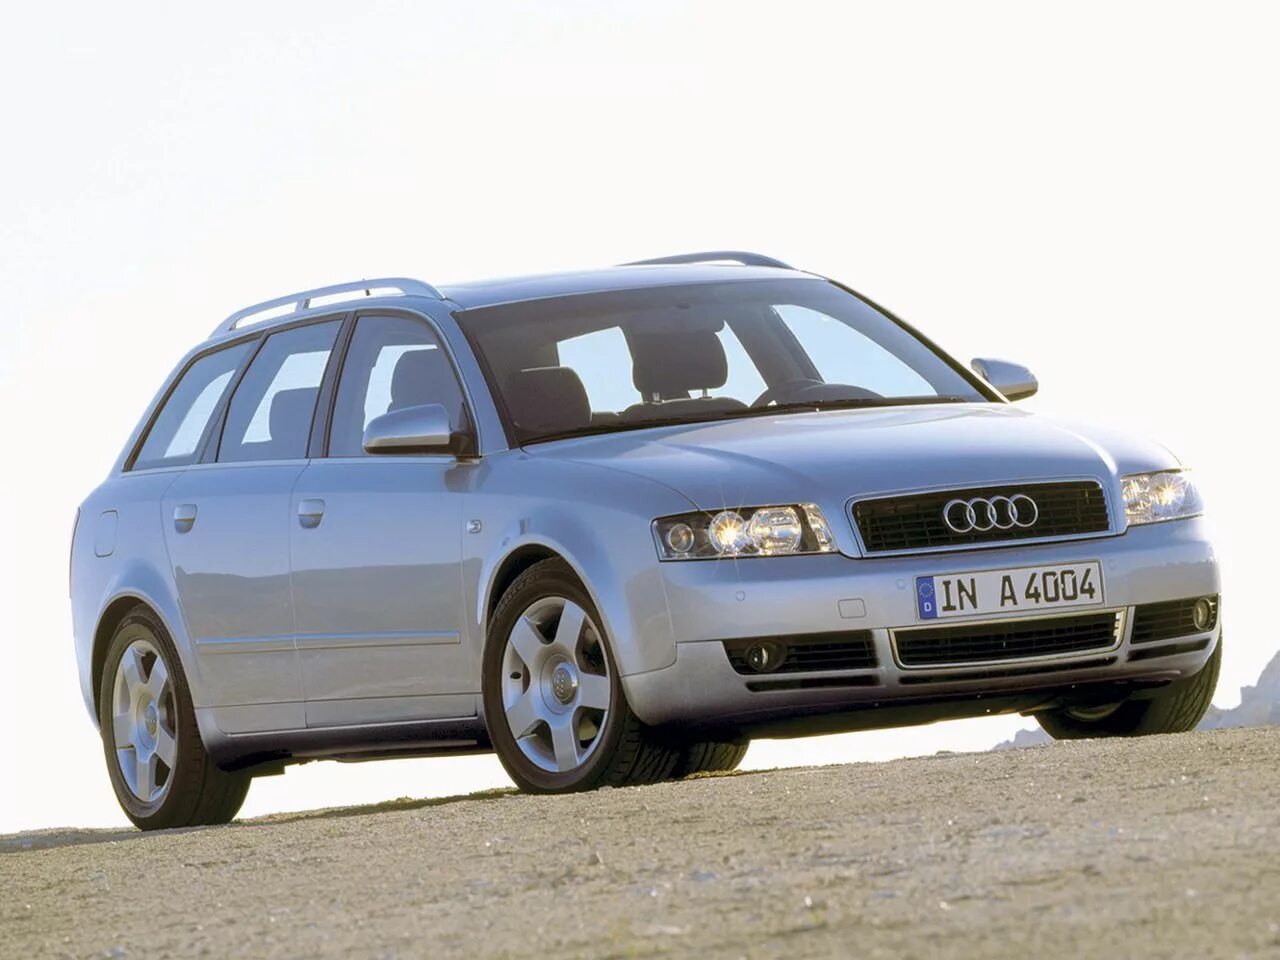 B4 2 b6 200. Ауди а4 Авант универсал. Audi a4 II (b6). Audi a4 универсал 2000. Audi a4 b6 универсал.